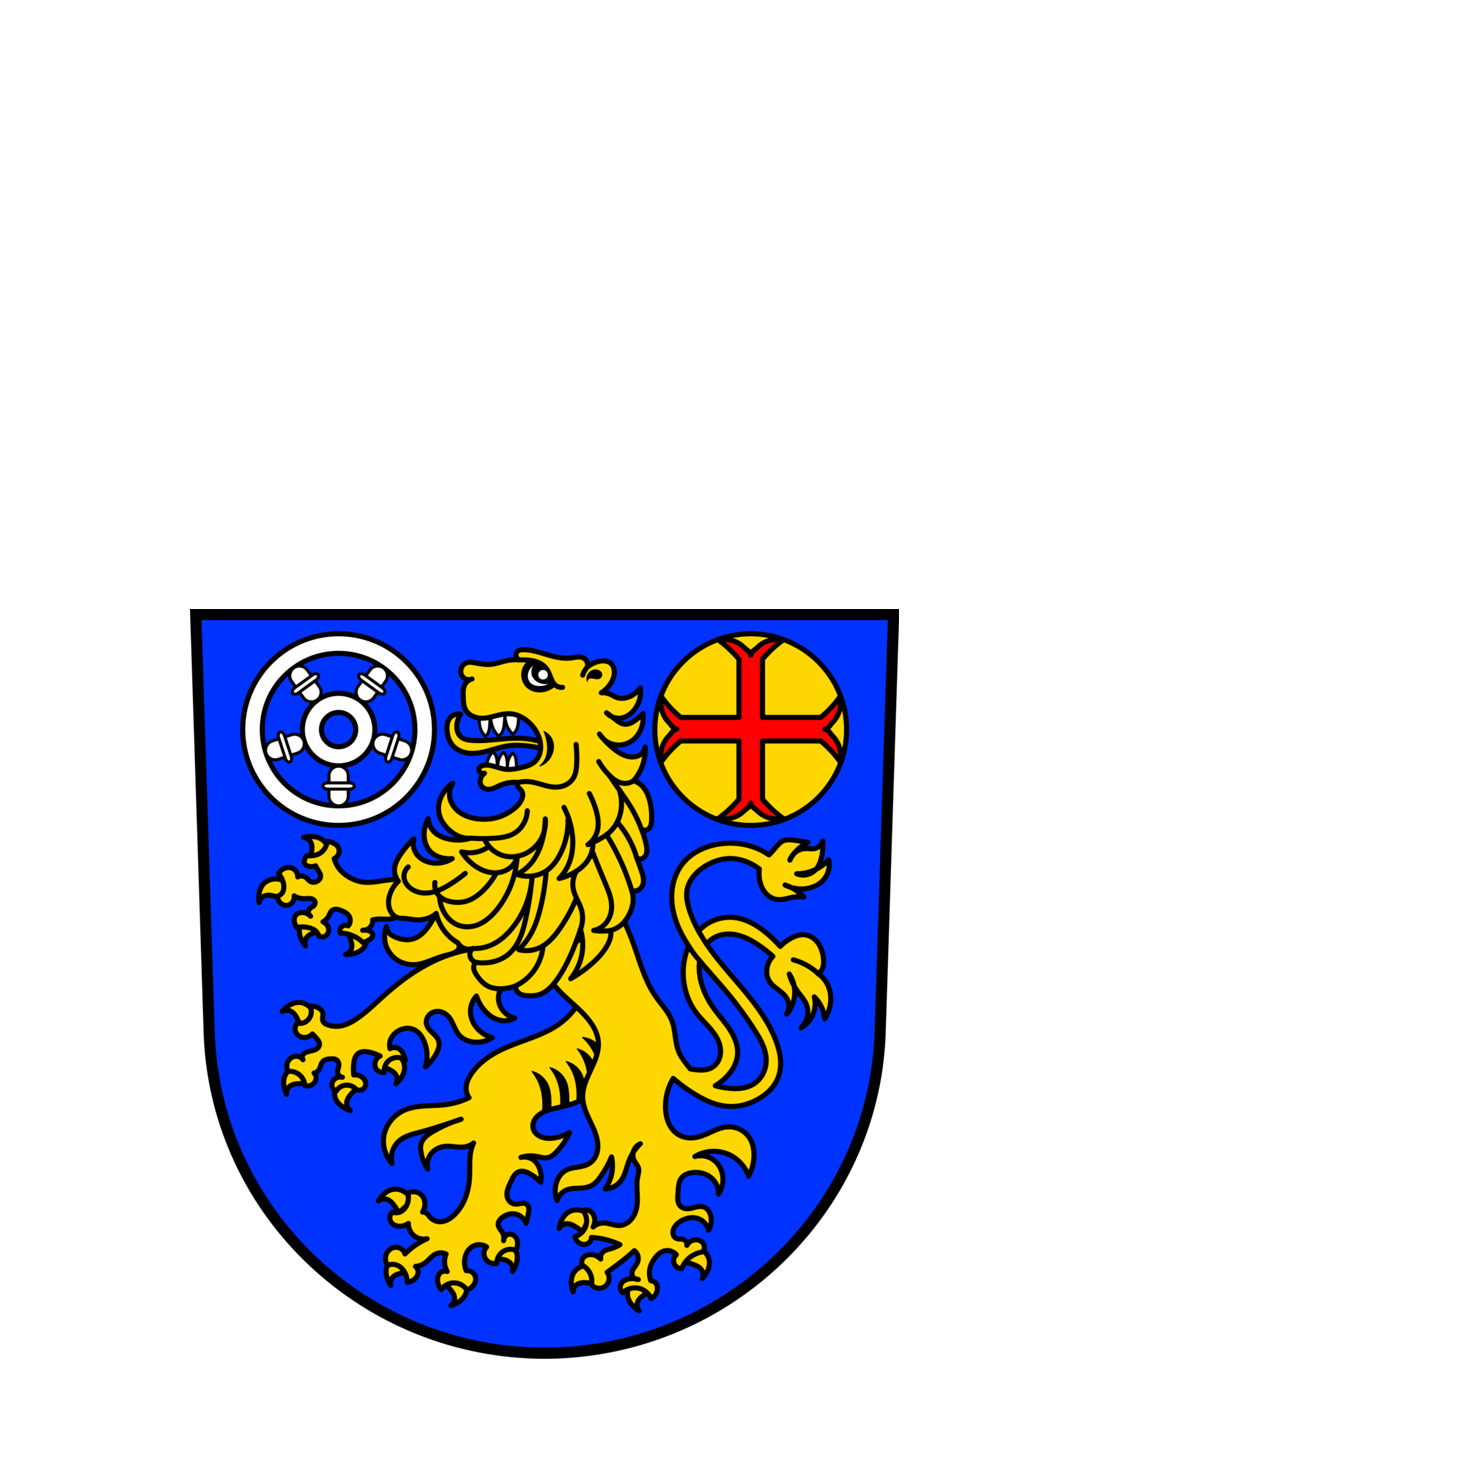 Wappen der Gemeinde Saarwellingen - © Gemeinde Saarwellingen